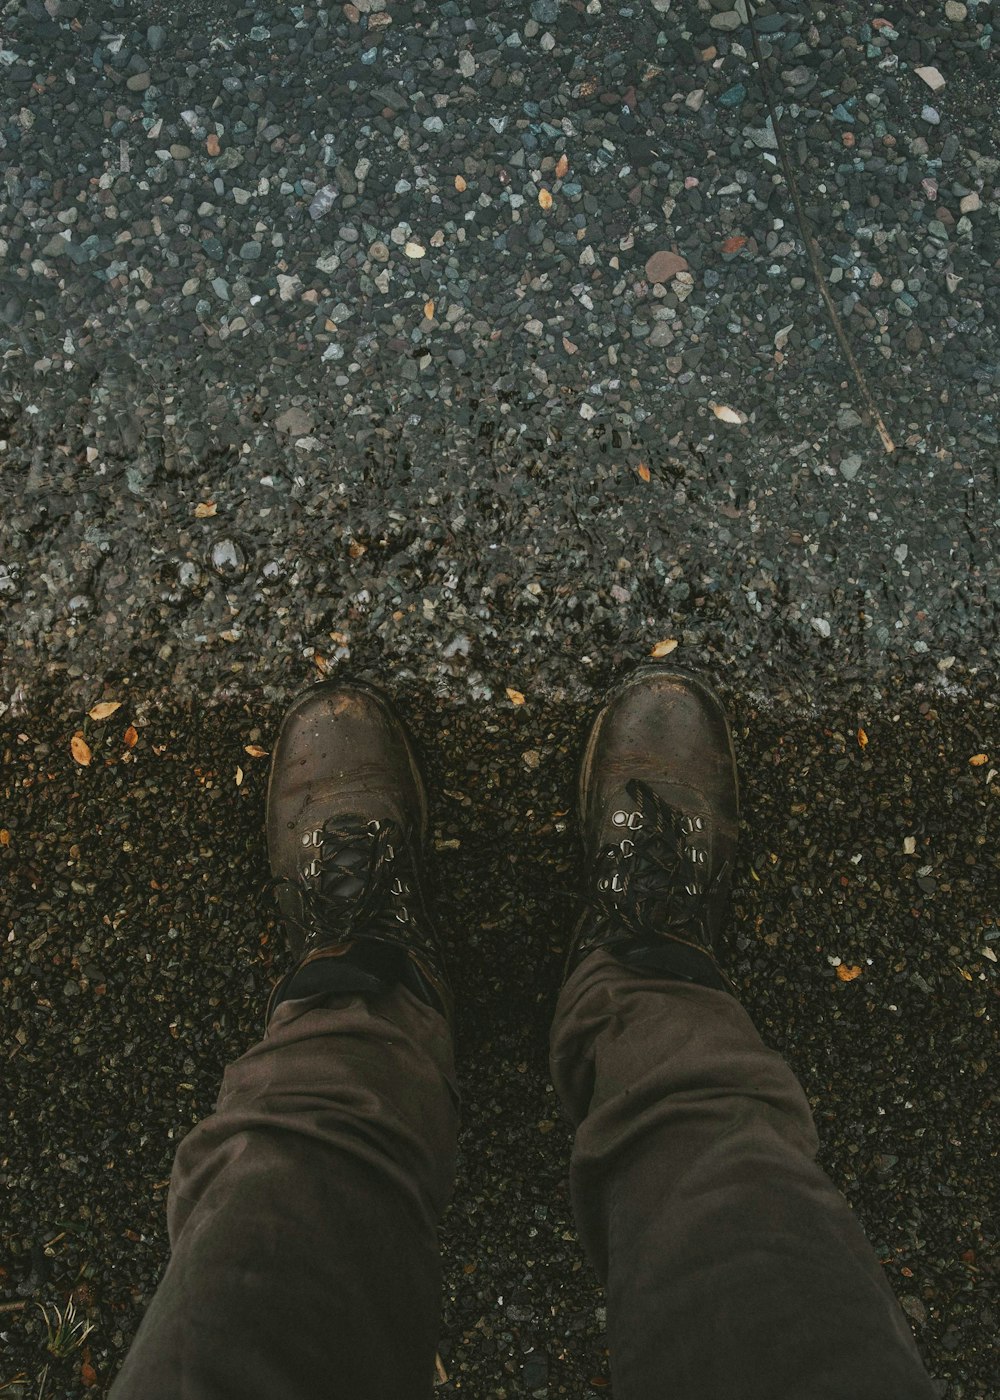 Persona con botas de cuero negro de pie en el suelo